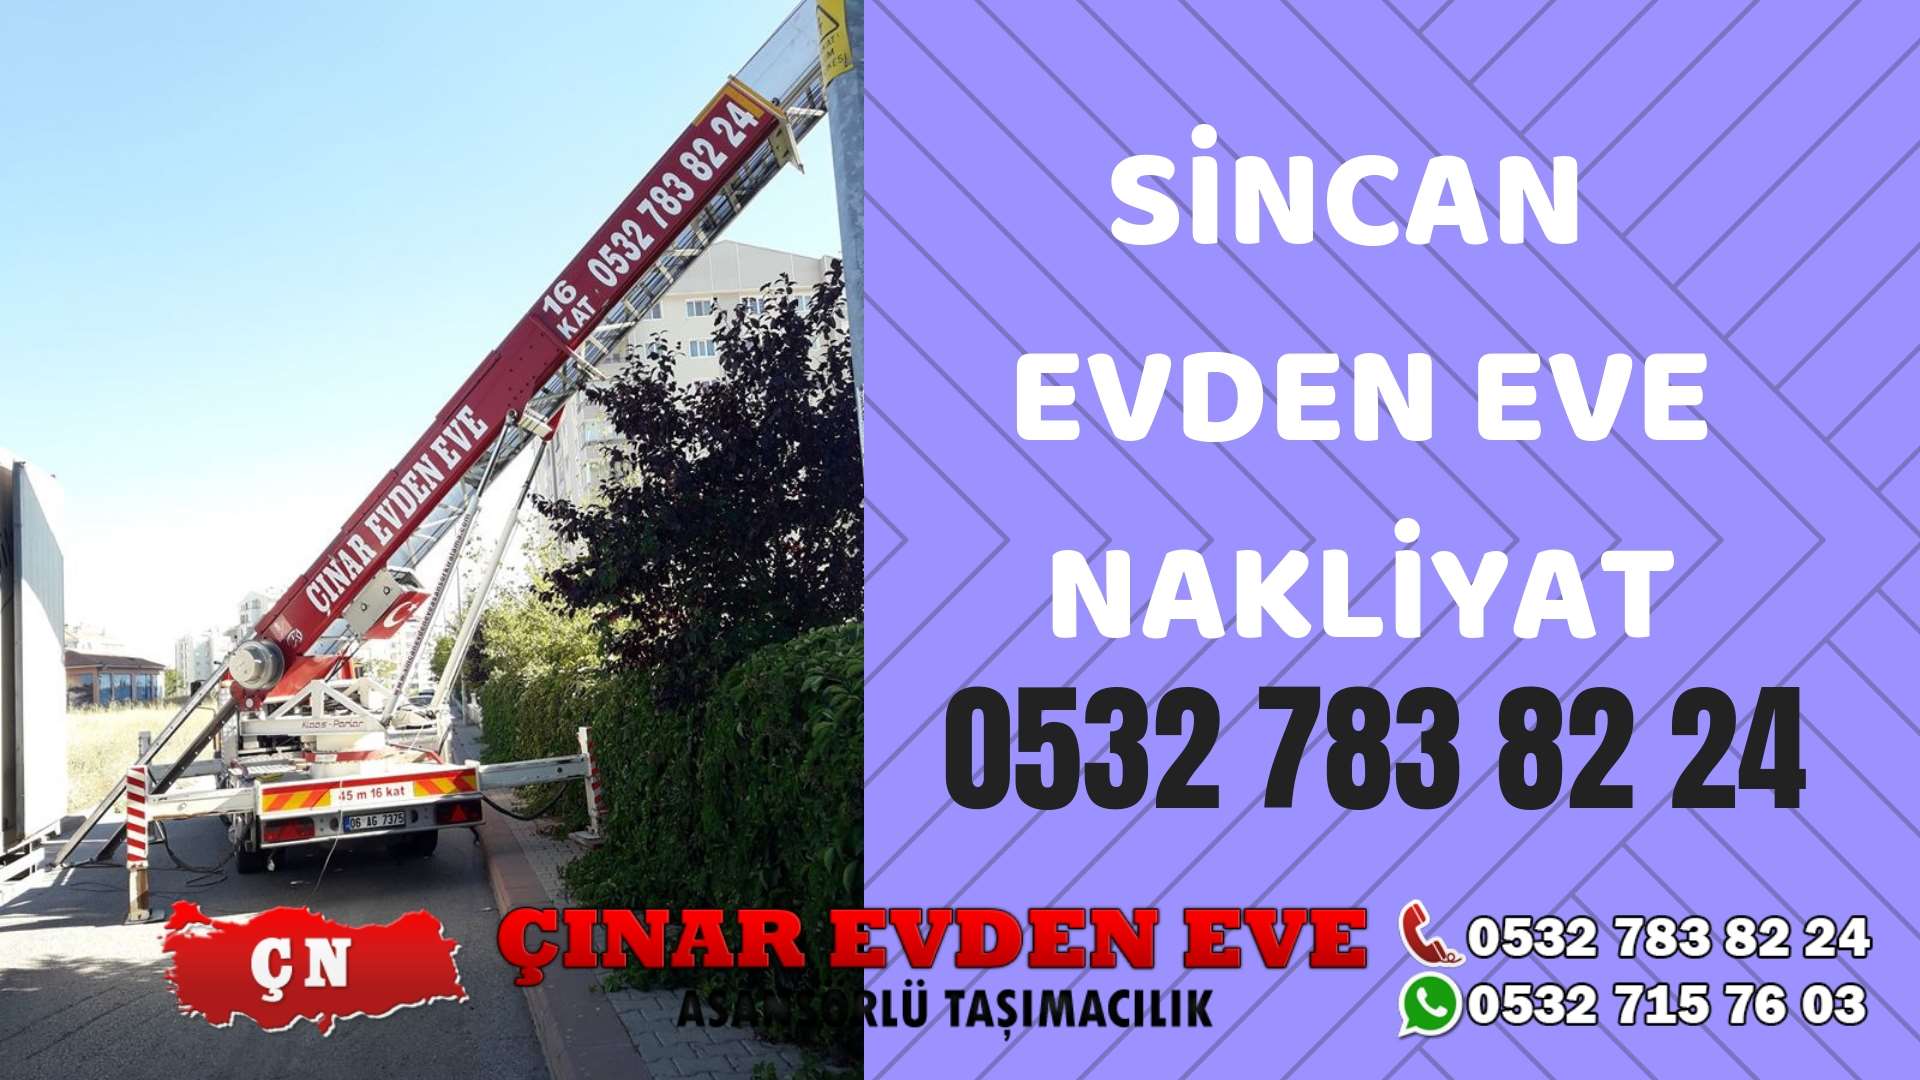 Ankara Yenimahalle Sincan evden eve asansörlü nakliyat en ucuz nakliye 0532 715 76 03